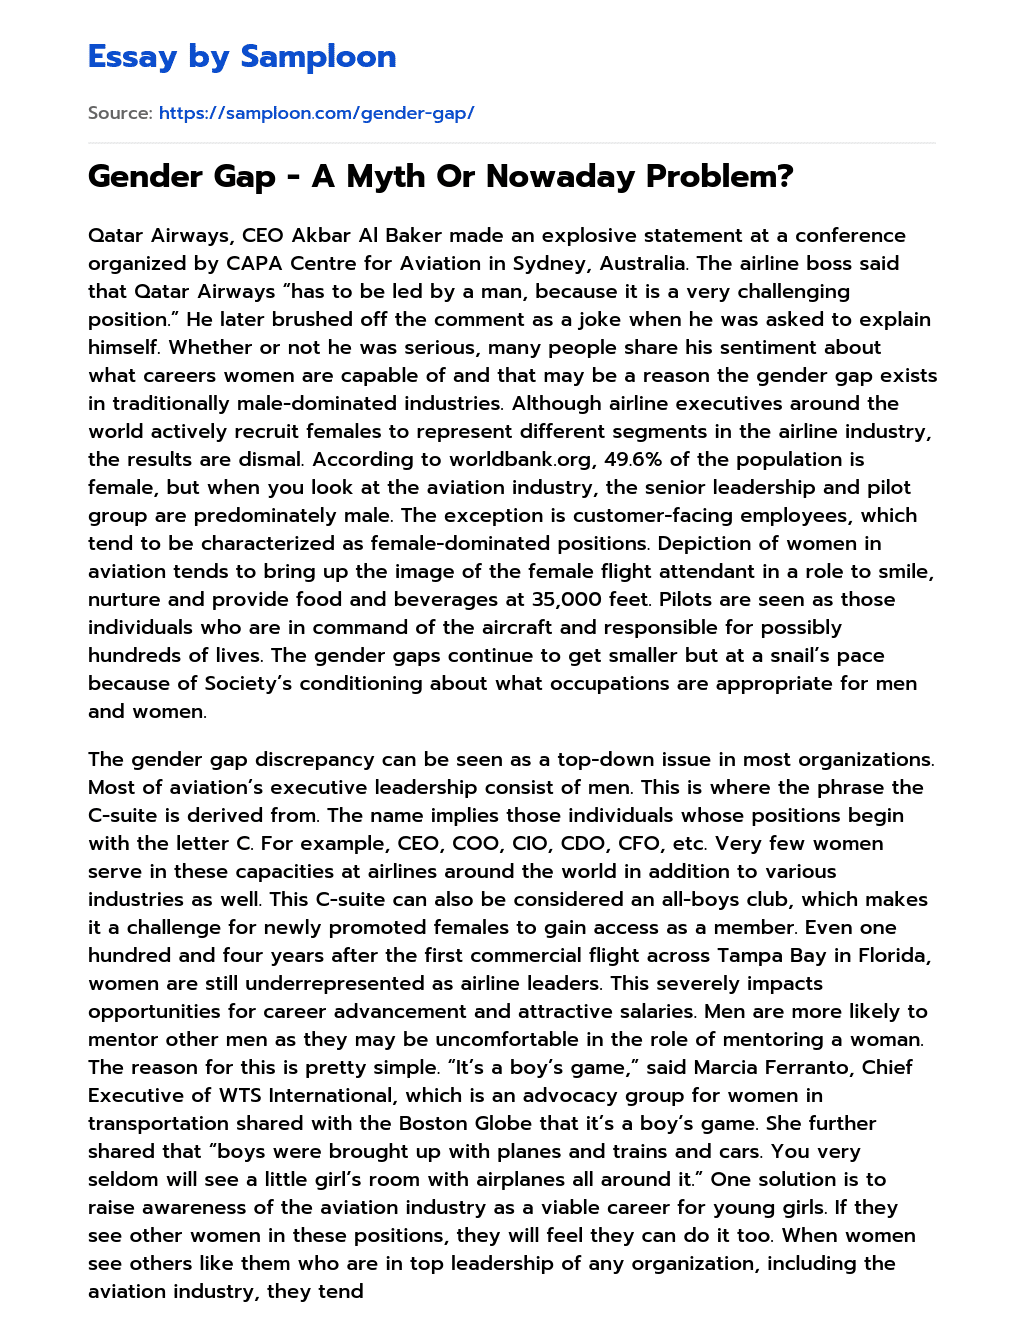 Gender Gap – A Myth Or Nowaday Problem? essay